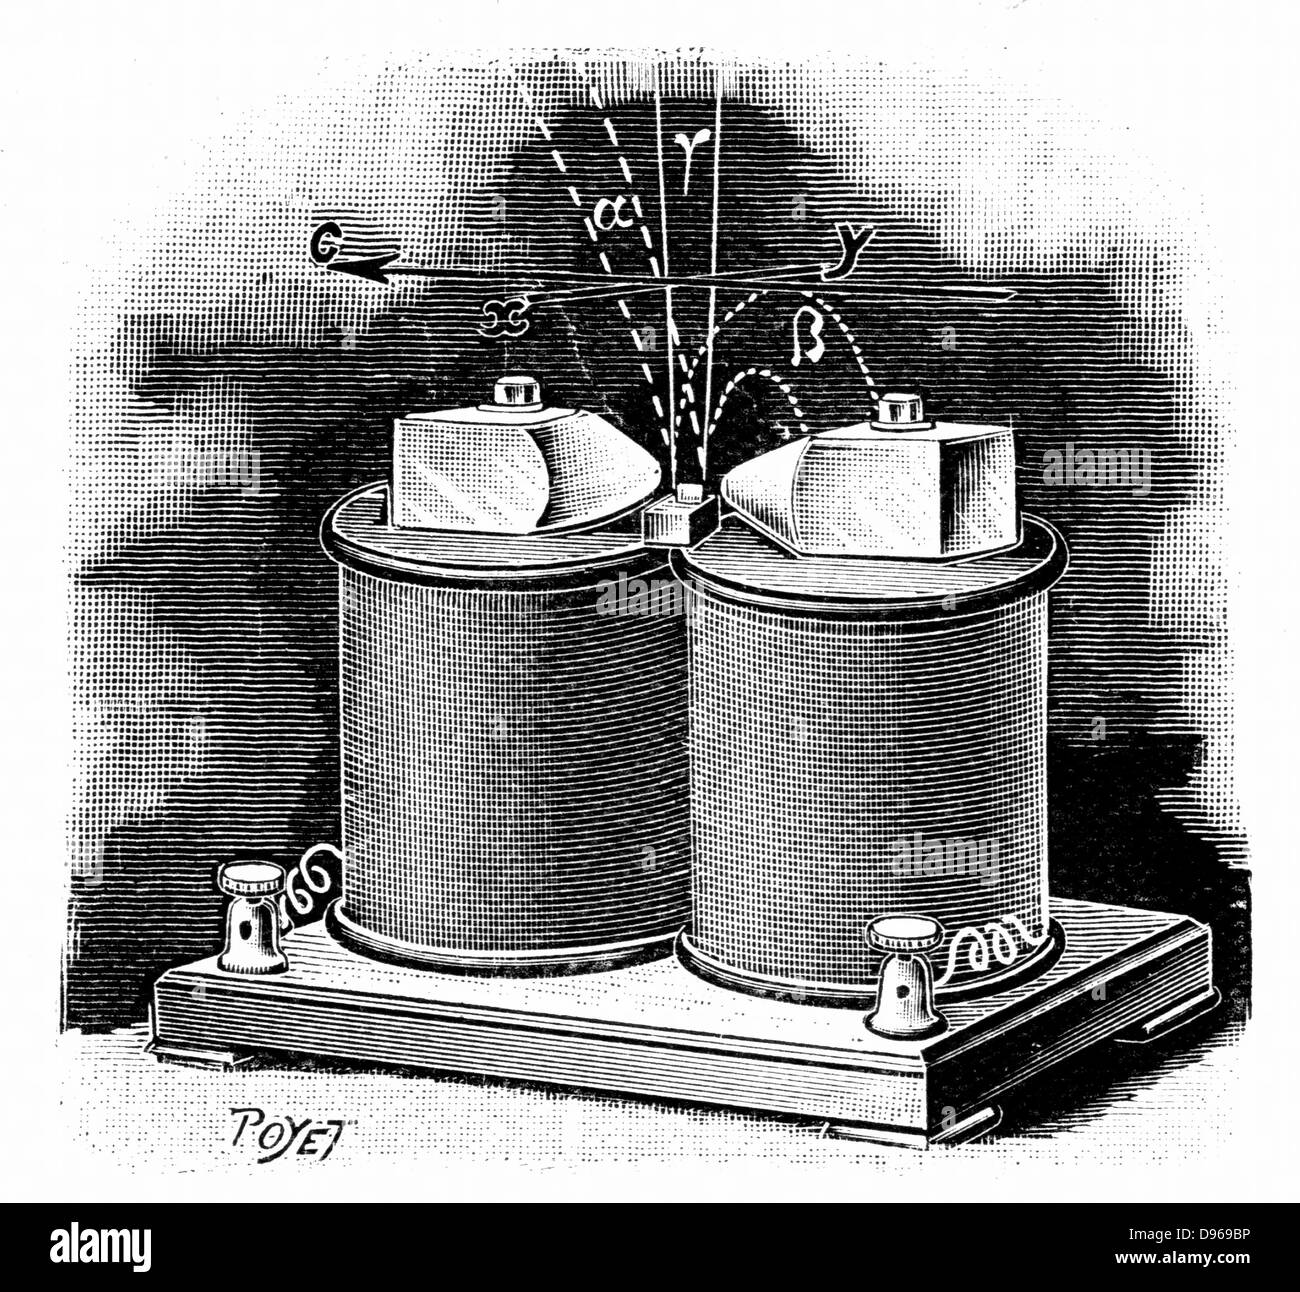 Chemins de l'alpha, bêta et les rayons gamma à partir d'un échantillon de radium placée entre pôles d'électroaimant, employé dans le laboratoire des curies, Paris. Publié gravure Paris, 1904 Banque D'Images